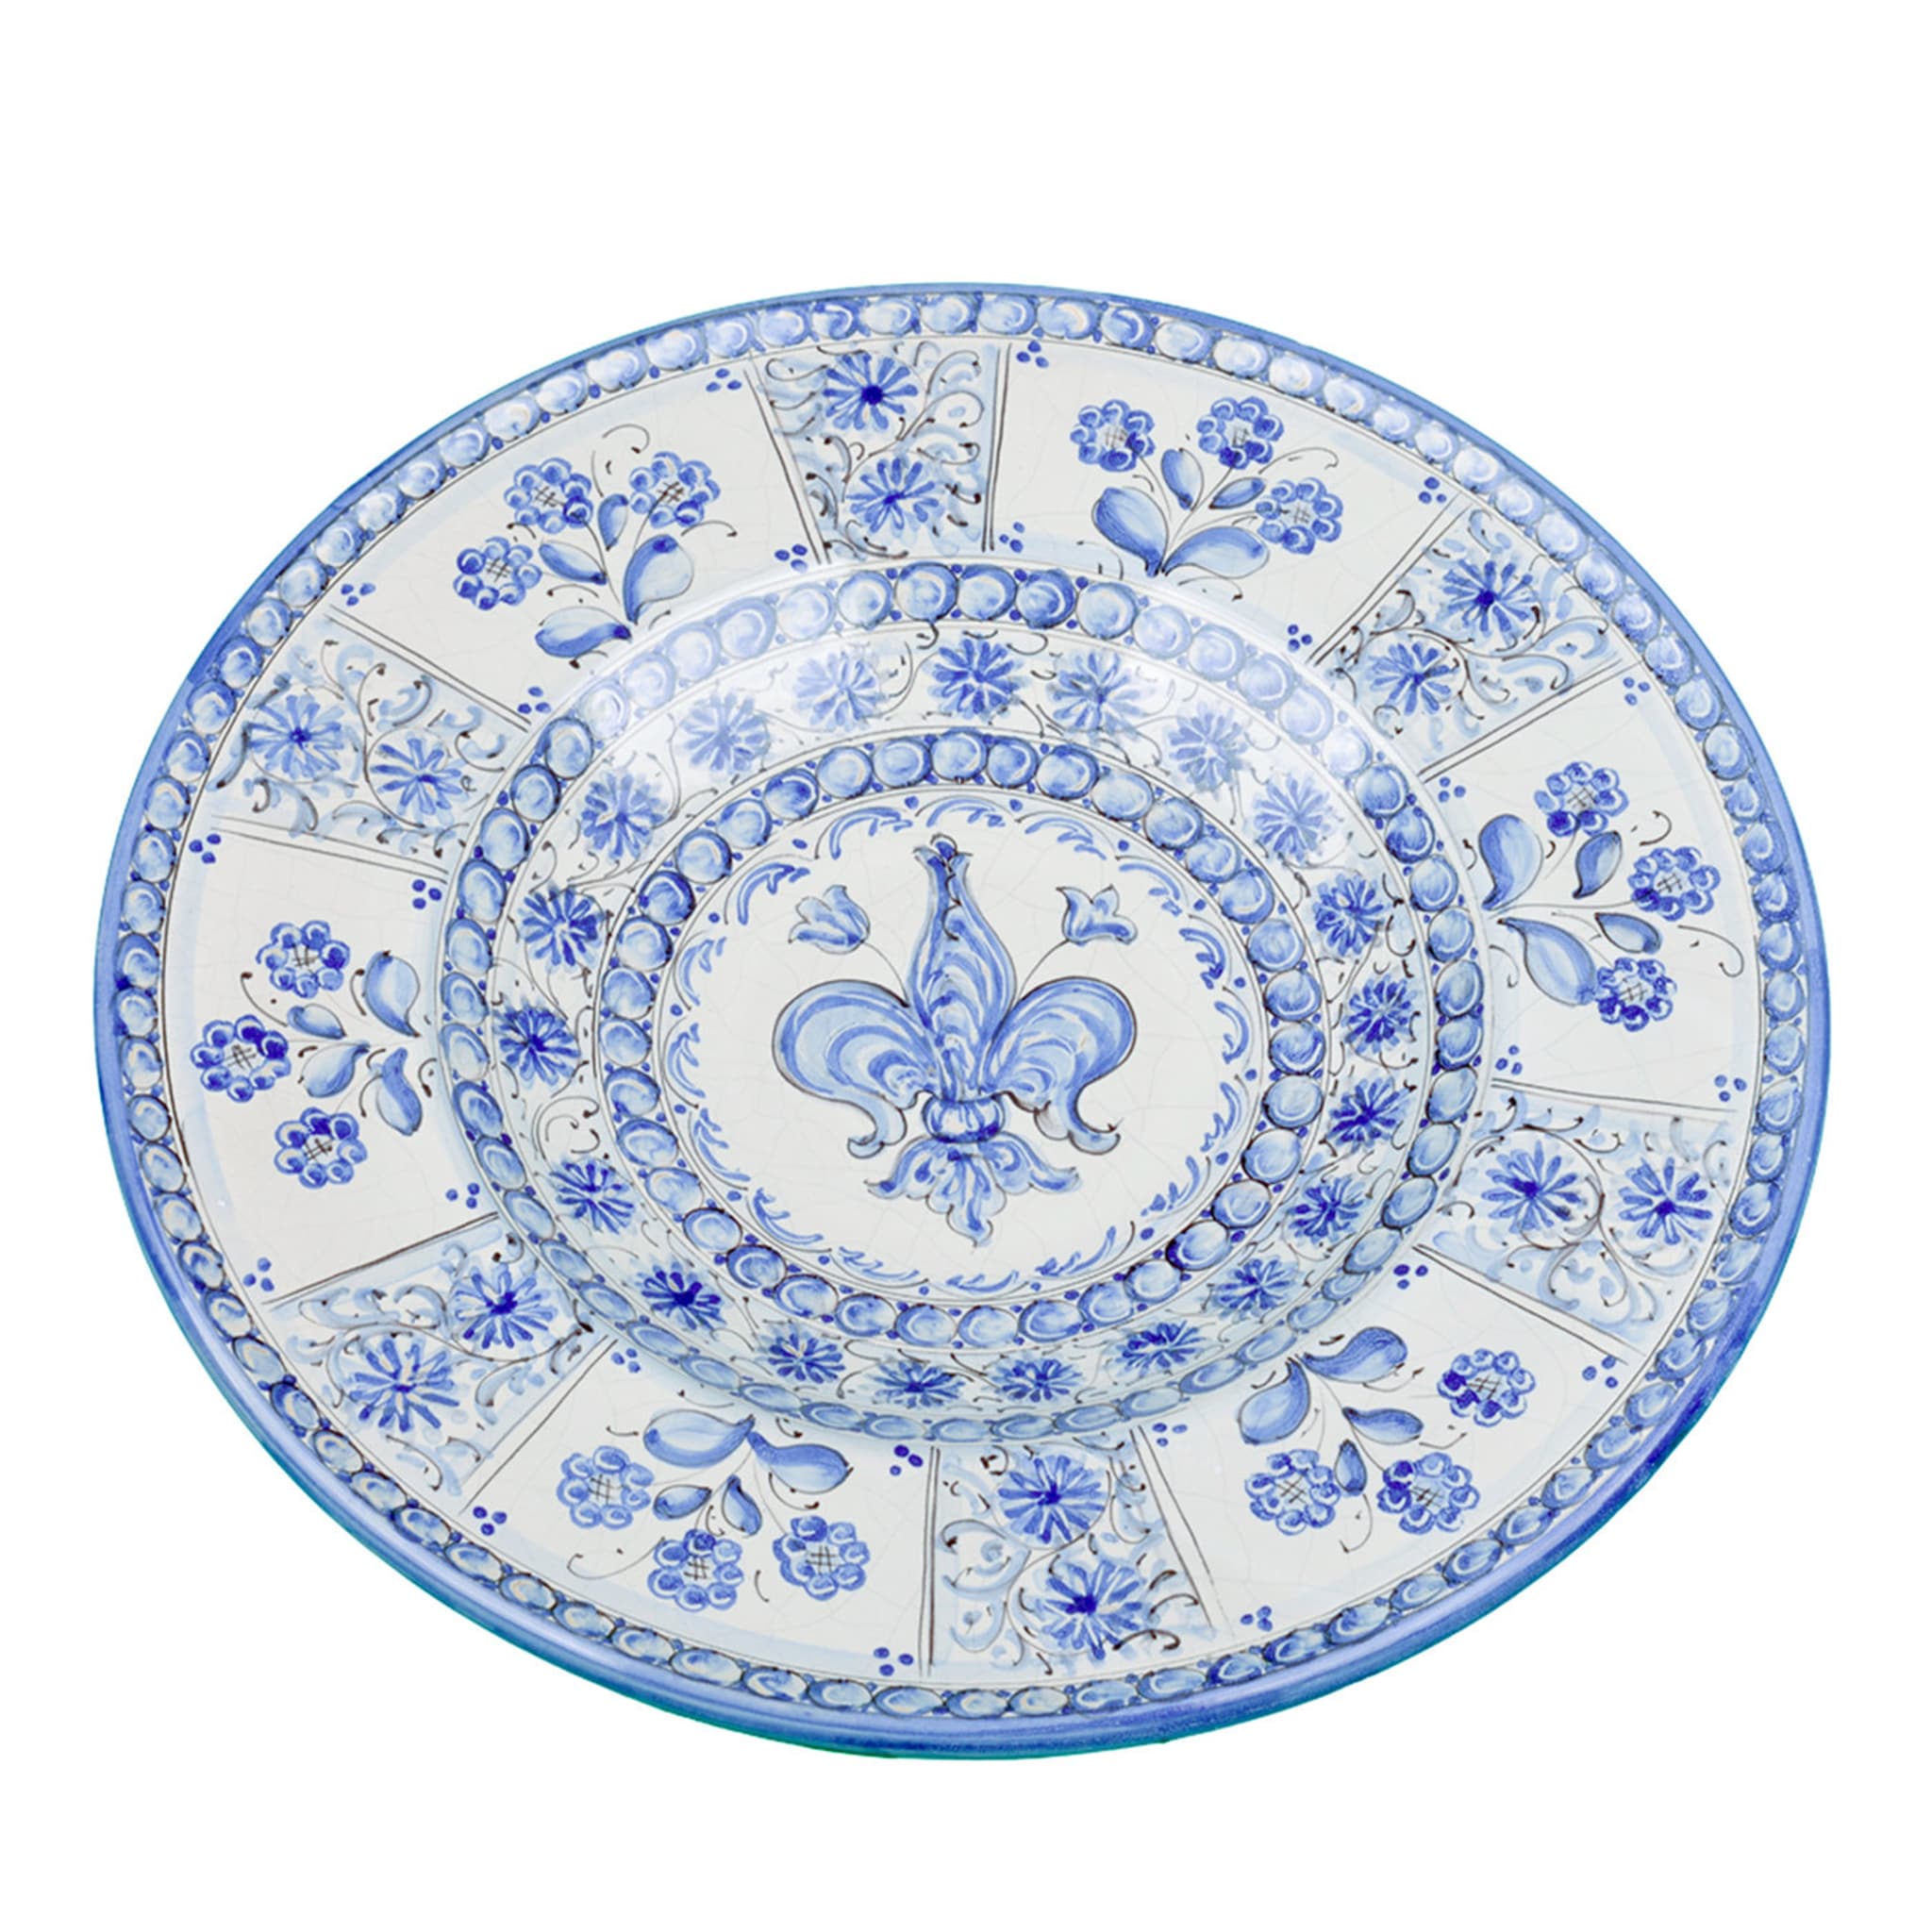 Piatto decorativo Fleur-de-Lis fiorentino blu di Lorenza Adami - Vista principale